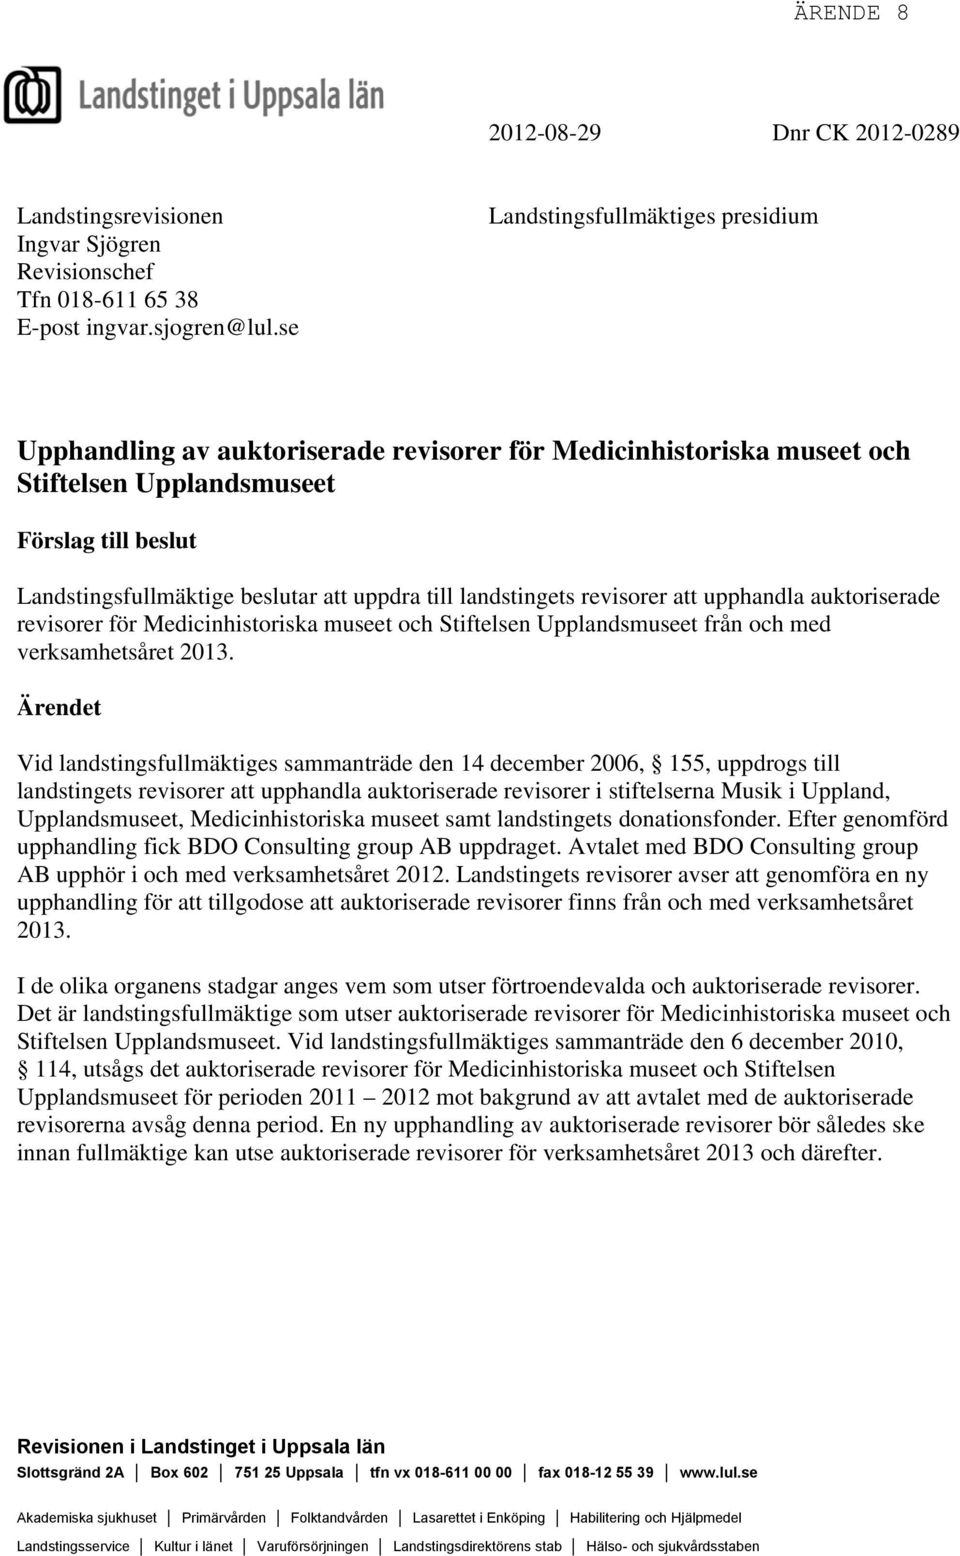 till landstingets revisorer att upphandla auktoriserade revisorer för Medicinhistoriska museet och Stiftelsen Upplandsmuseet från och med verksamhetsåret 2013.